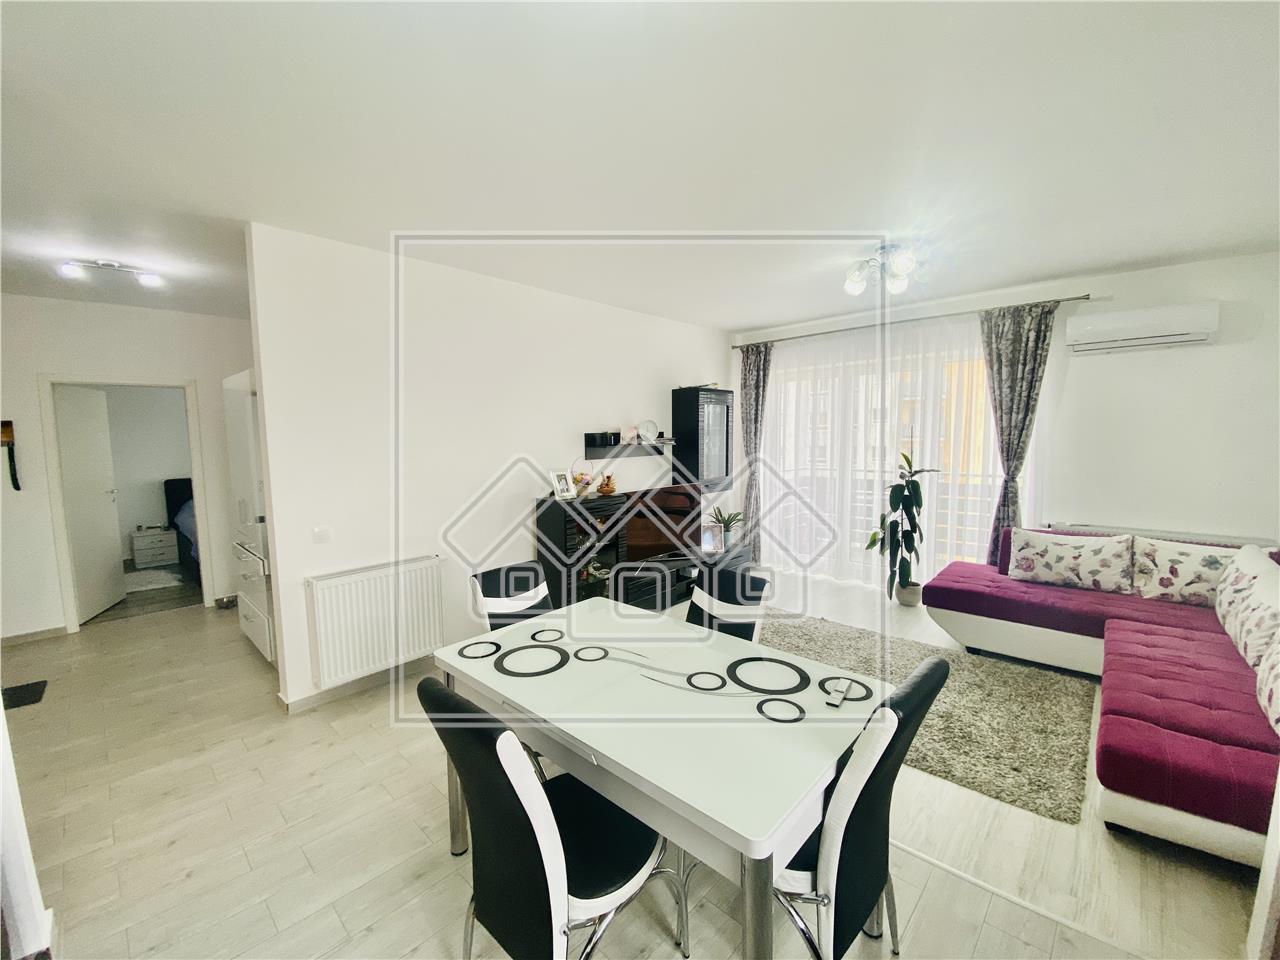 Wohnung zum Verkauf in Sibiu - 3 Zimmer, Balkon und Abstellraum - Nach